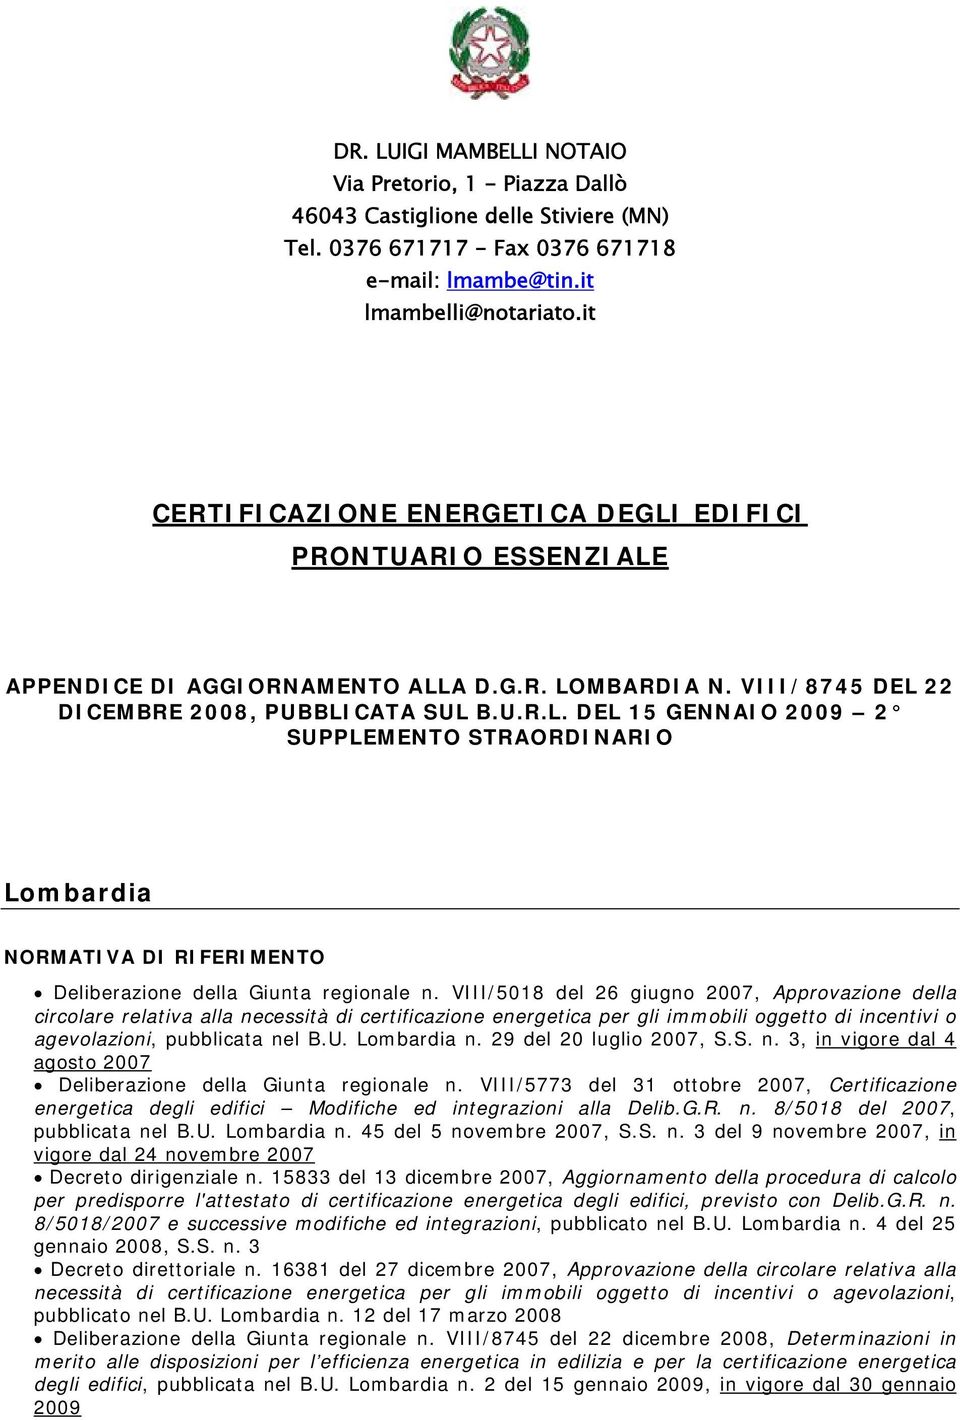 VIII/5018 del 26 giugno 2007, Approvazione della circolare relativa alla necessità di certificazione energetica per gli immobili oggetto di incentivi o agevolazioni, pubblicata nel B.U. Lombardia n.